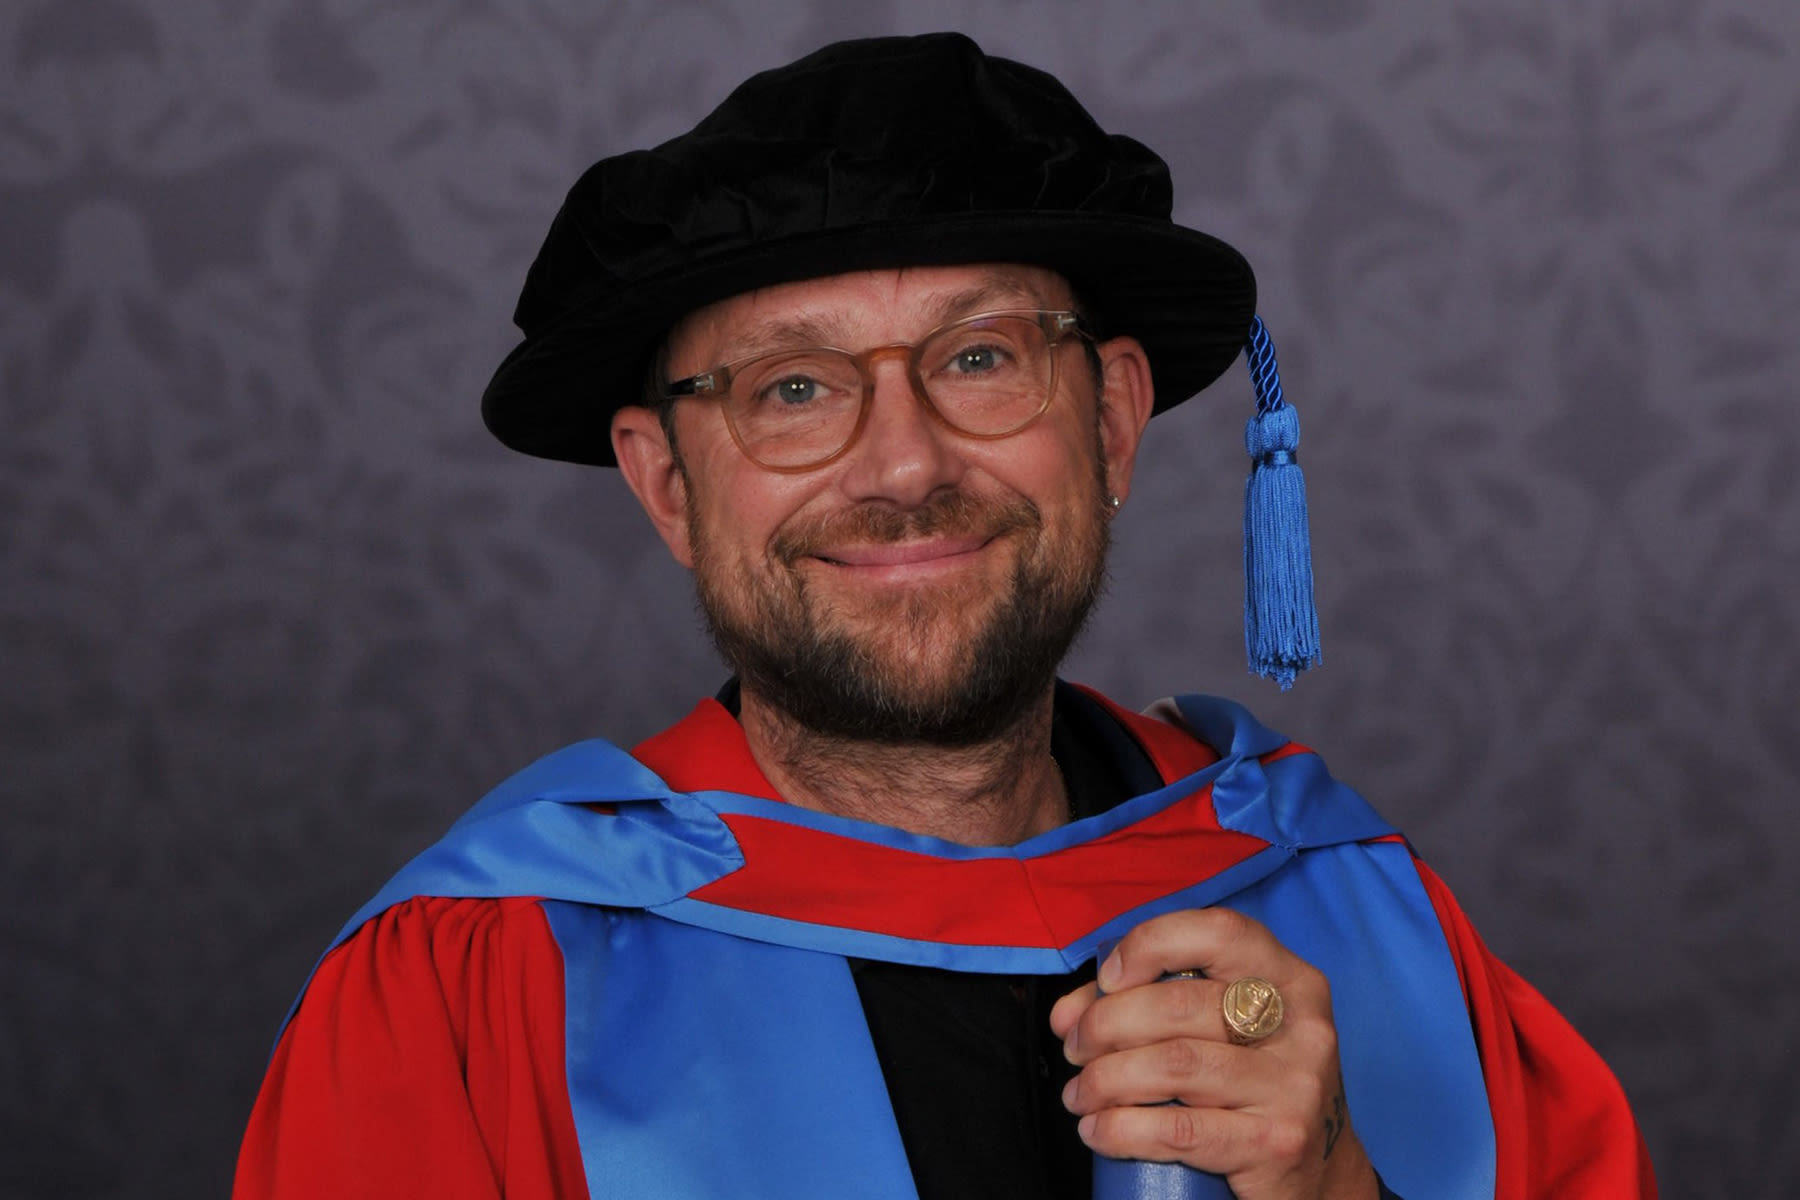 Gorillaz’ Damon Albarn Awarded Honorary Degree From University of Exeter